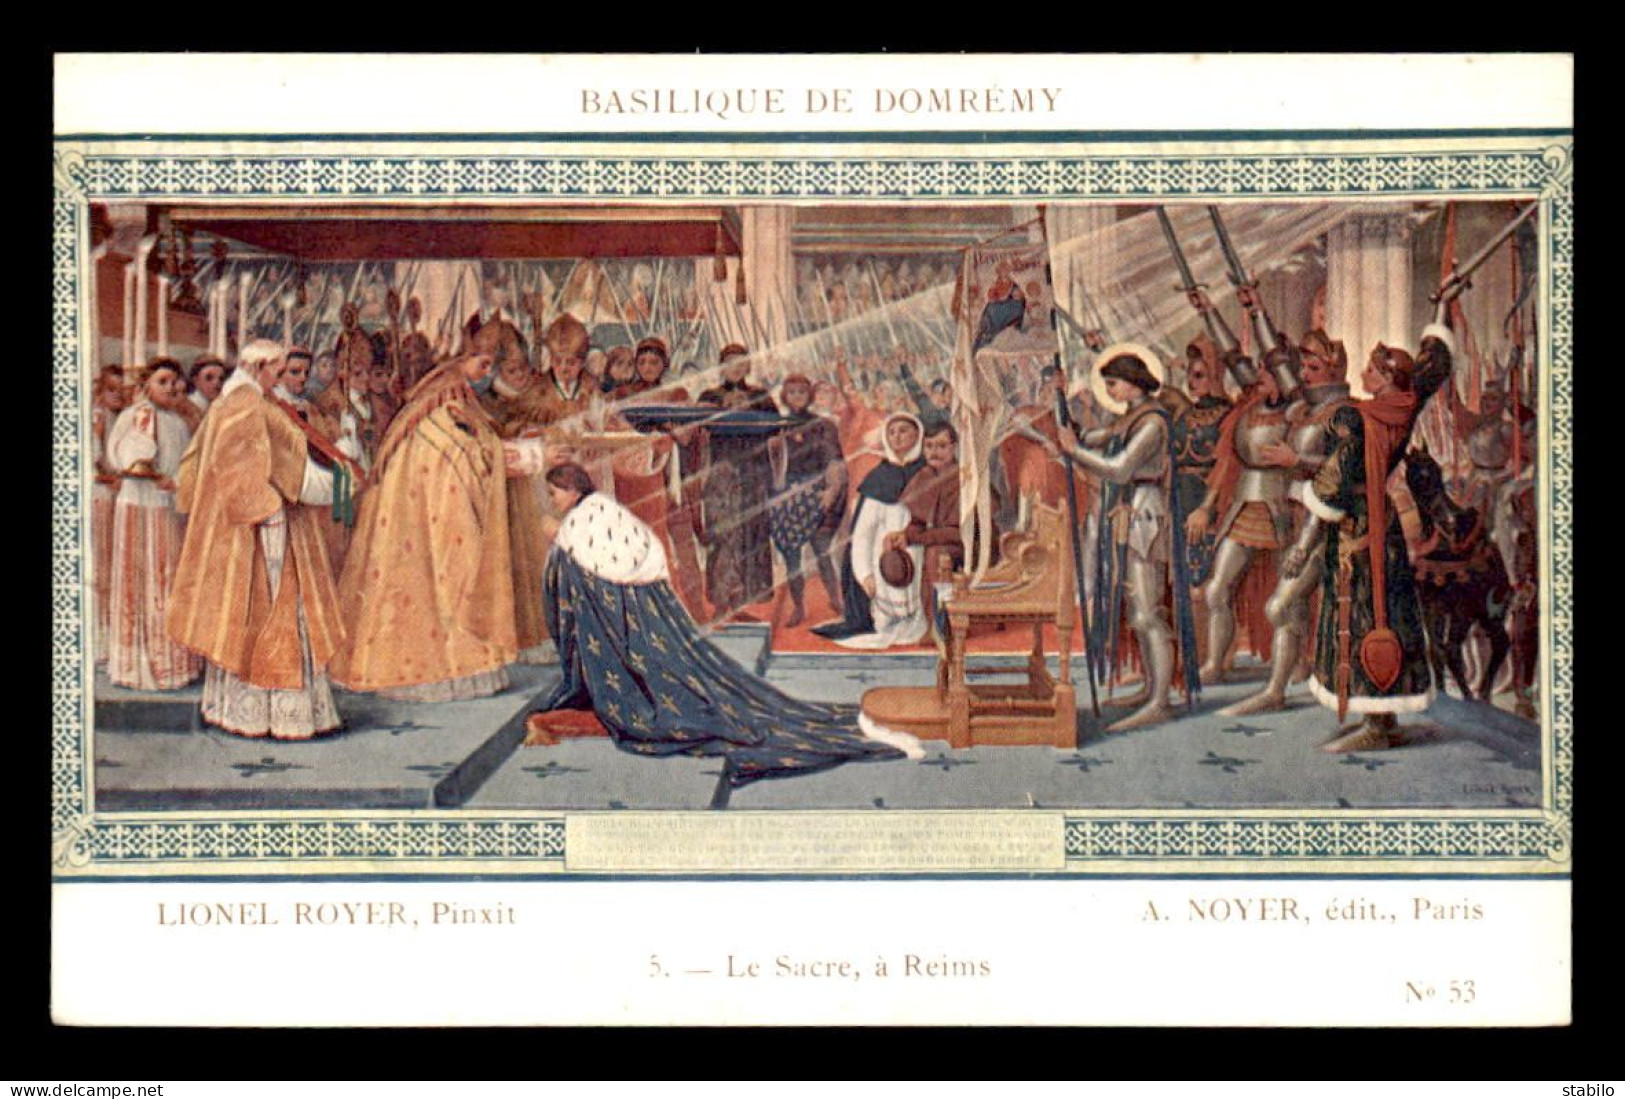 JEANNE D'ARC - TABLEAU LIONEL ROYER A LA BASILIQUE DE DOMREMY - LE SACRE A REIMS - Berühmt Frauen